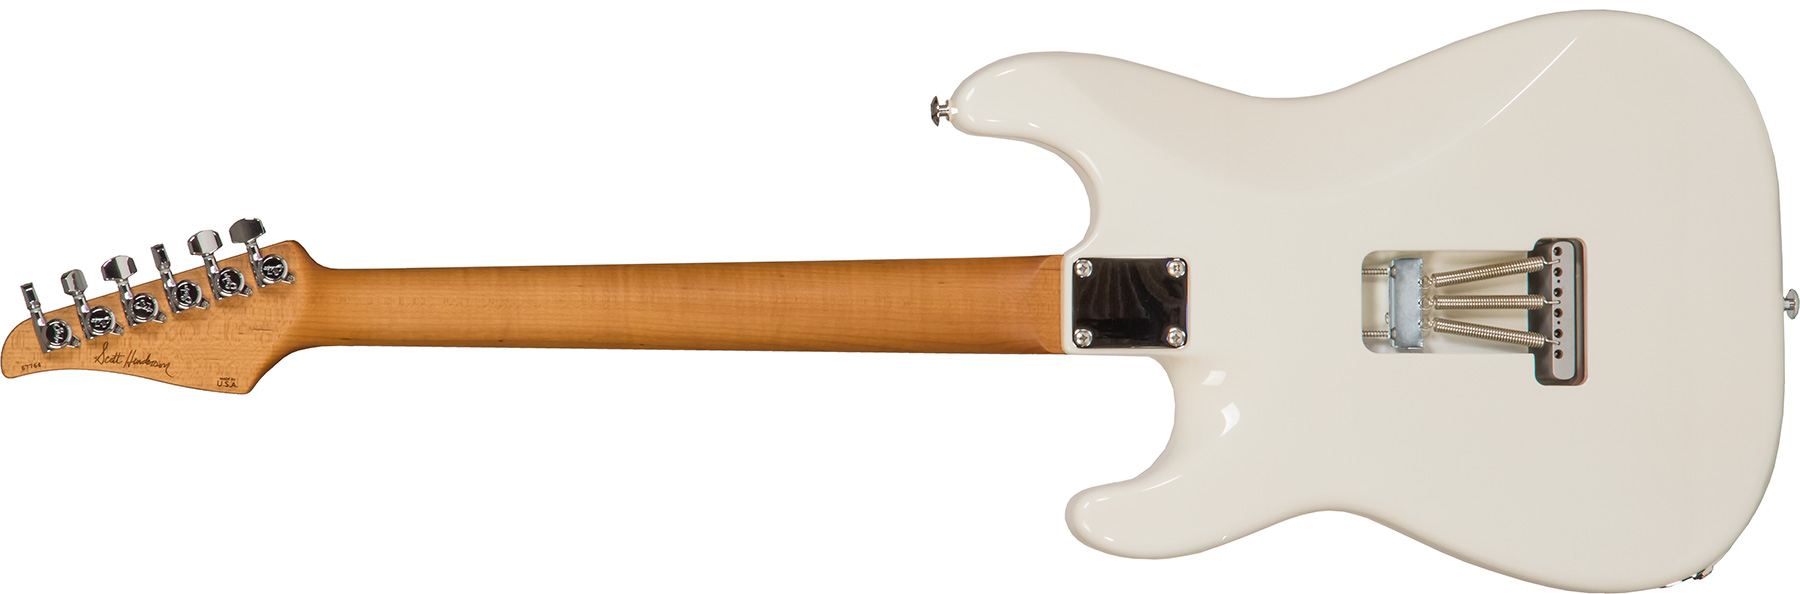 Suhr Scott Henderson Classic S 01-sig-0009 Signature 3s Trem Rw #67764 - Olympic White - Elektrische gitaar in Str-vorm - Variation 1